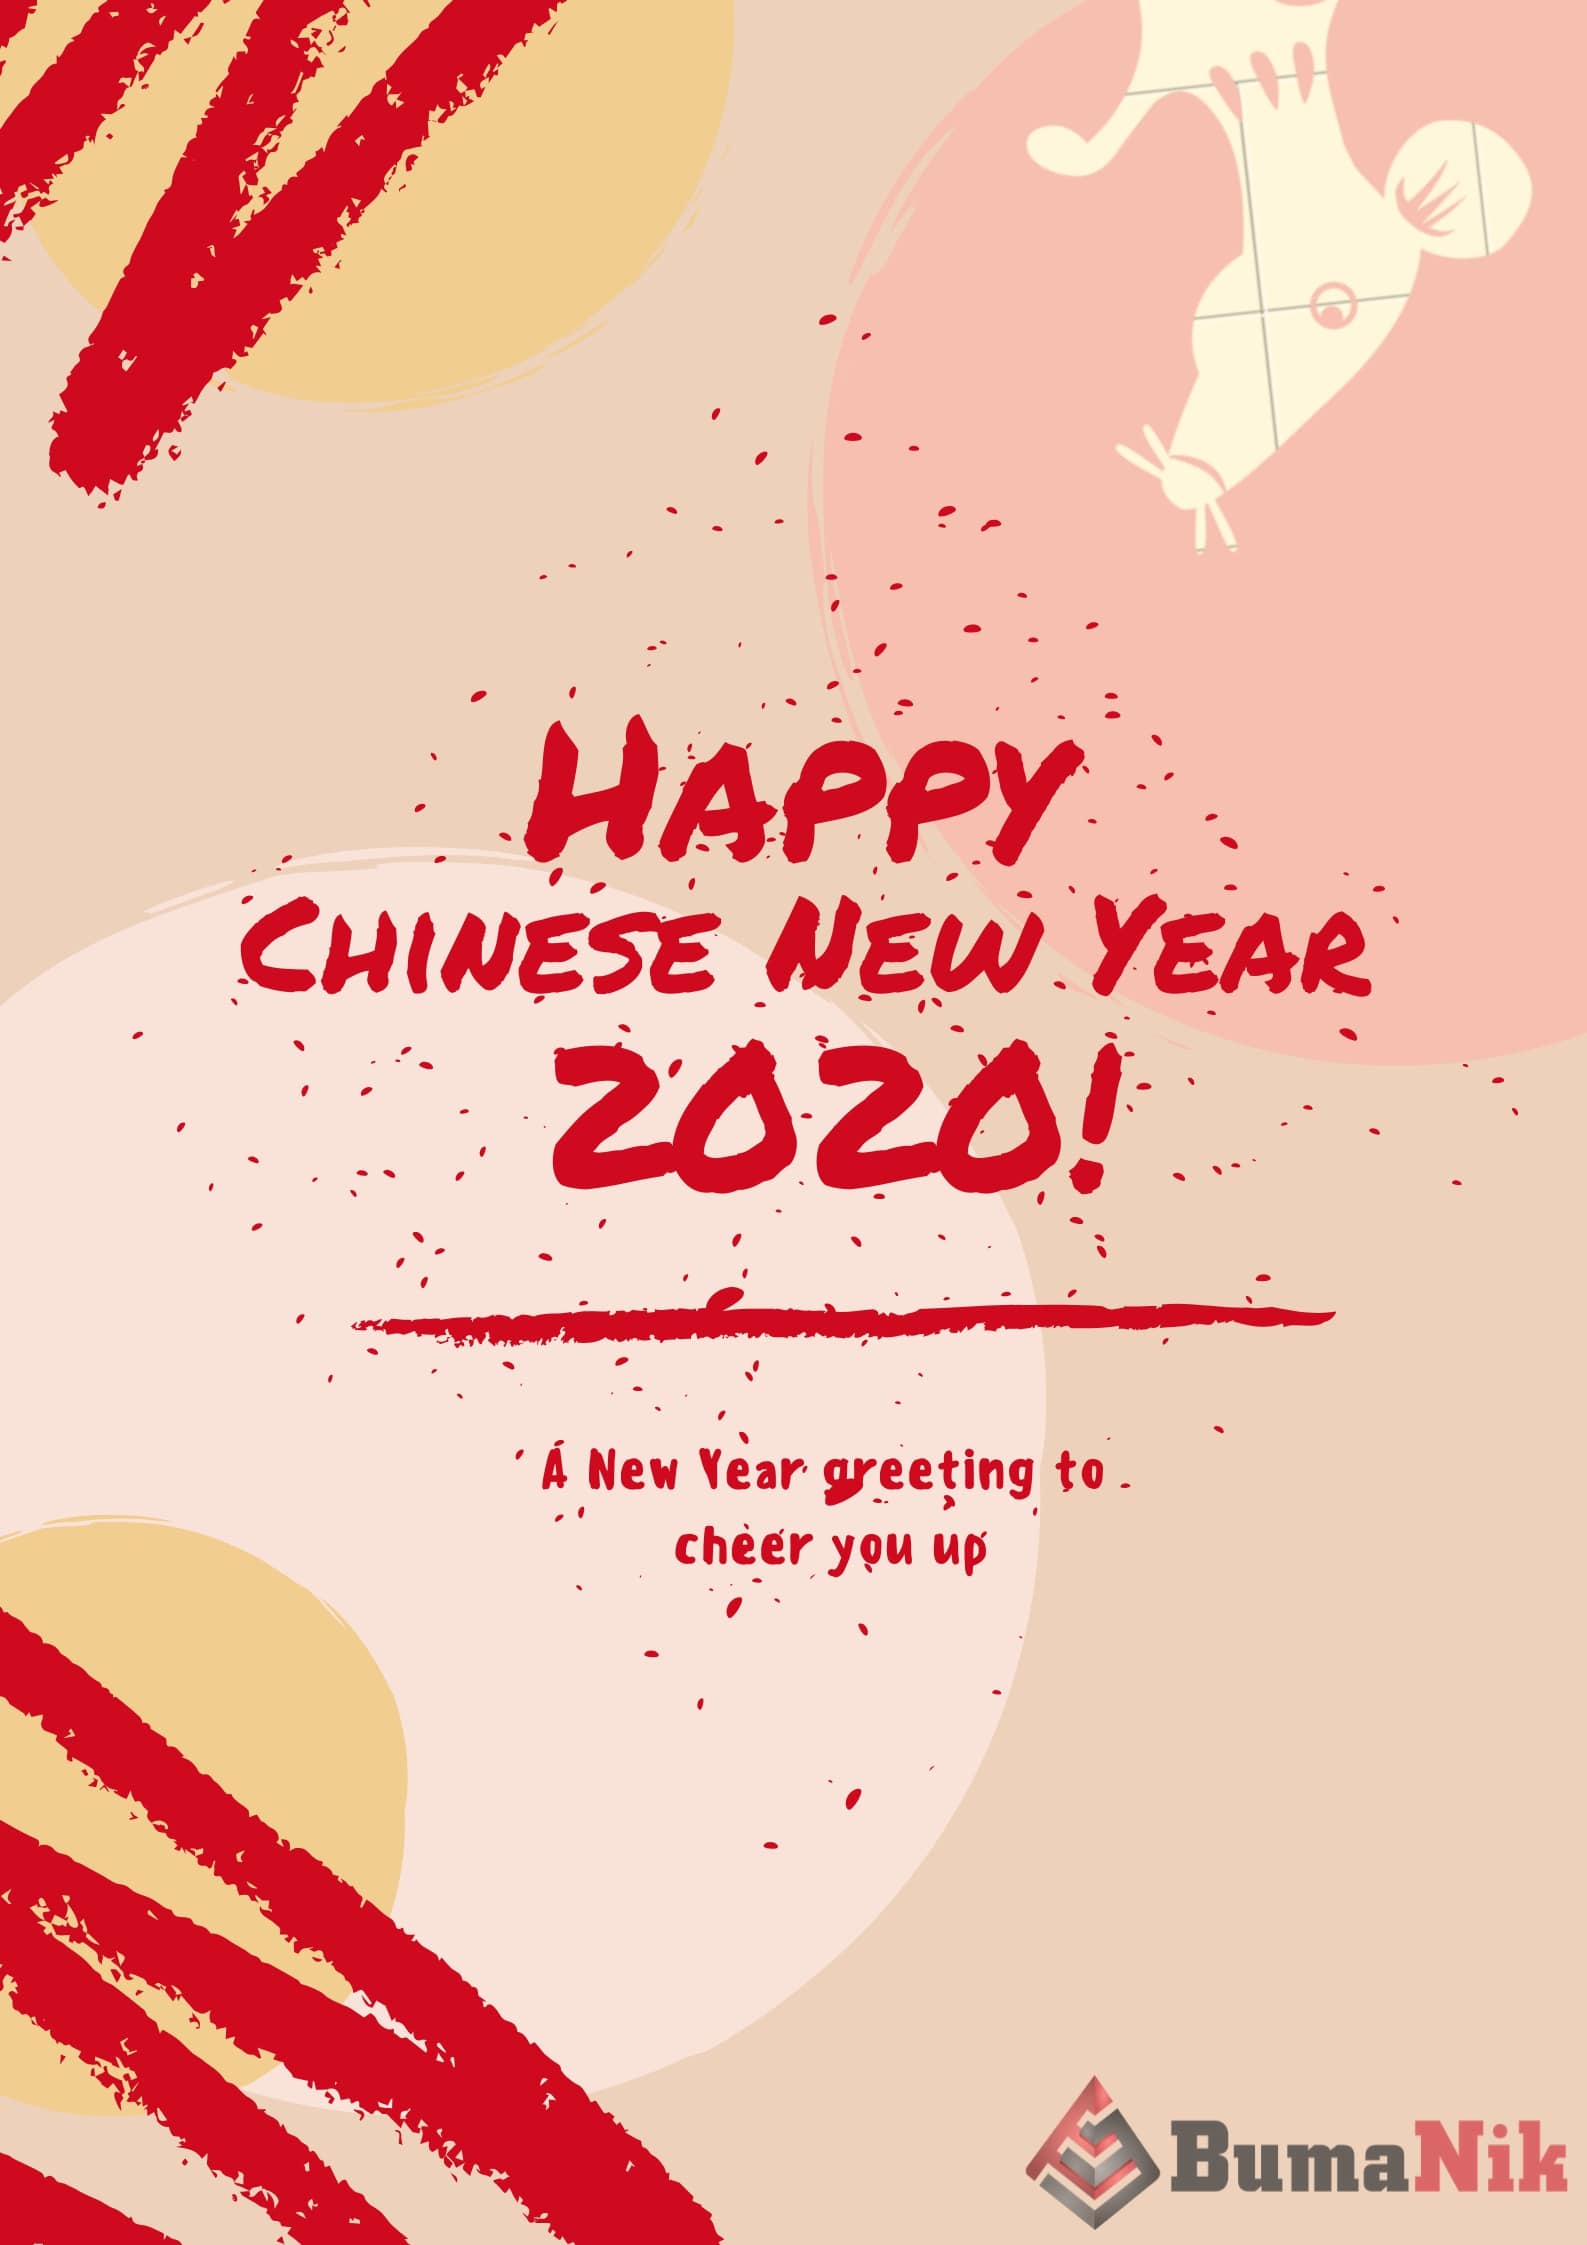 Bumanik : Happy Chinese New Year 2020